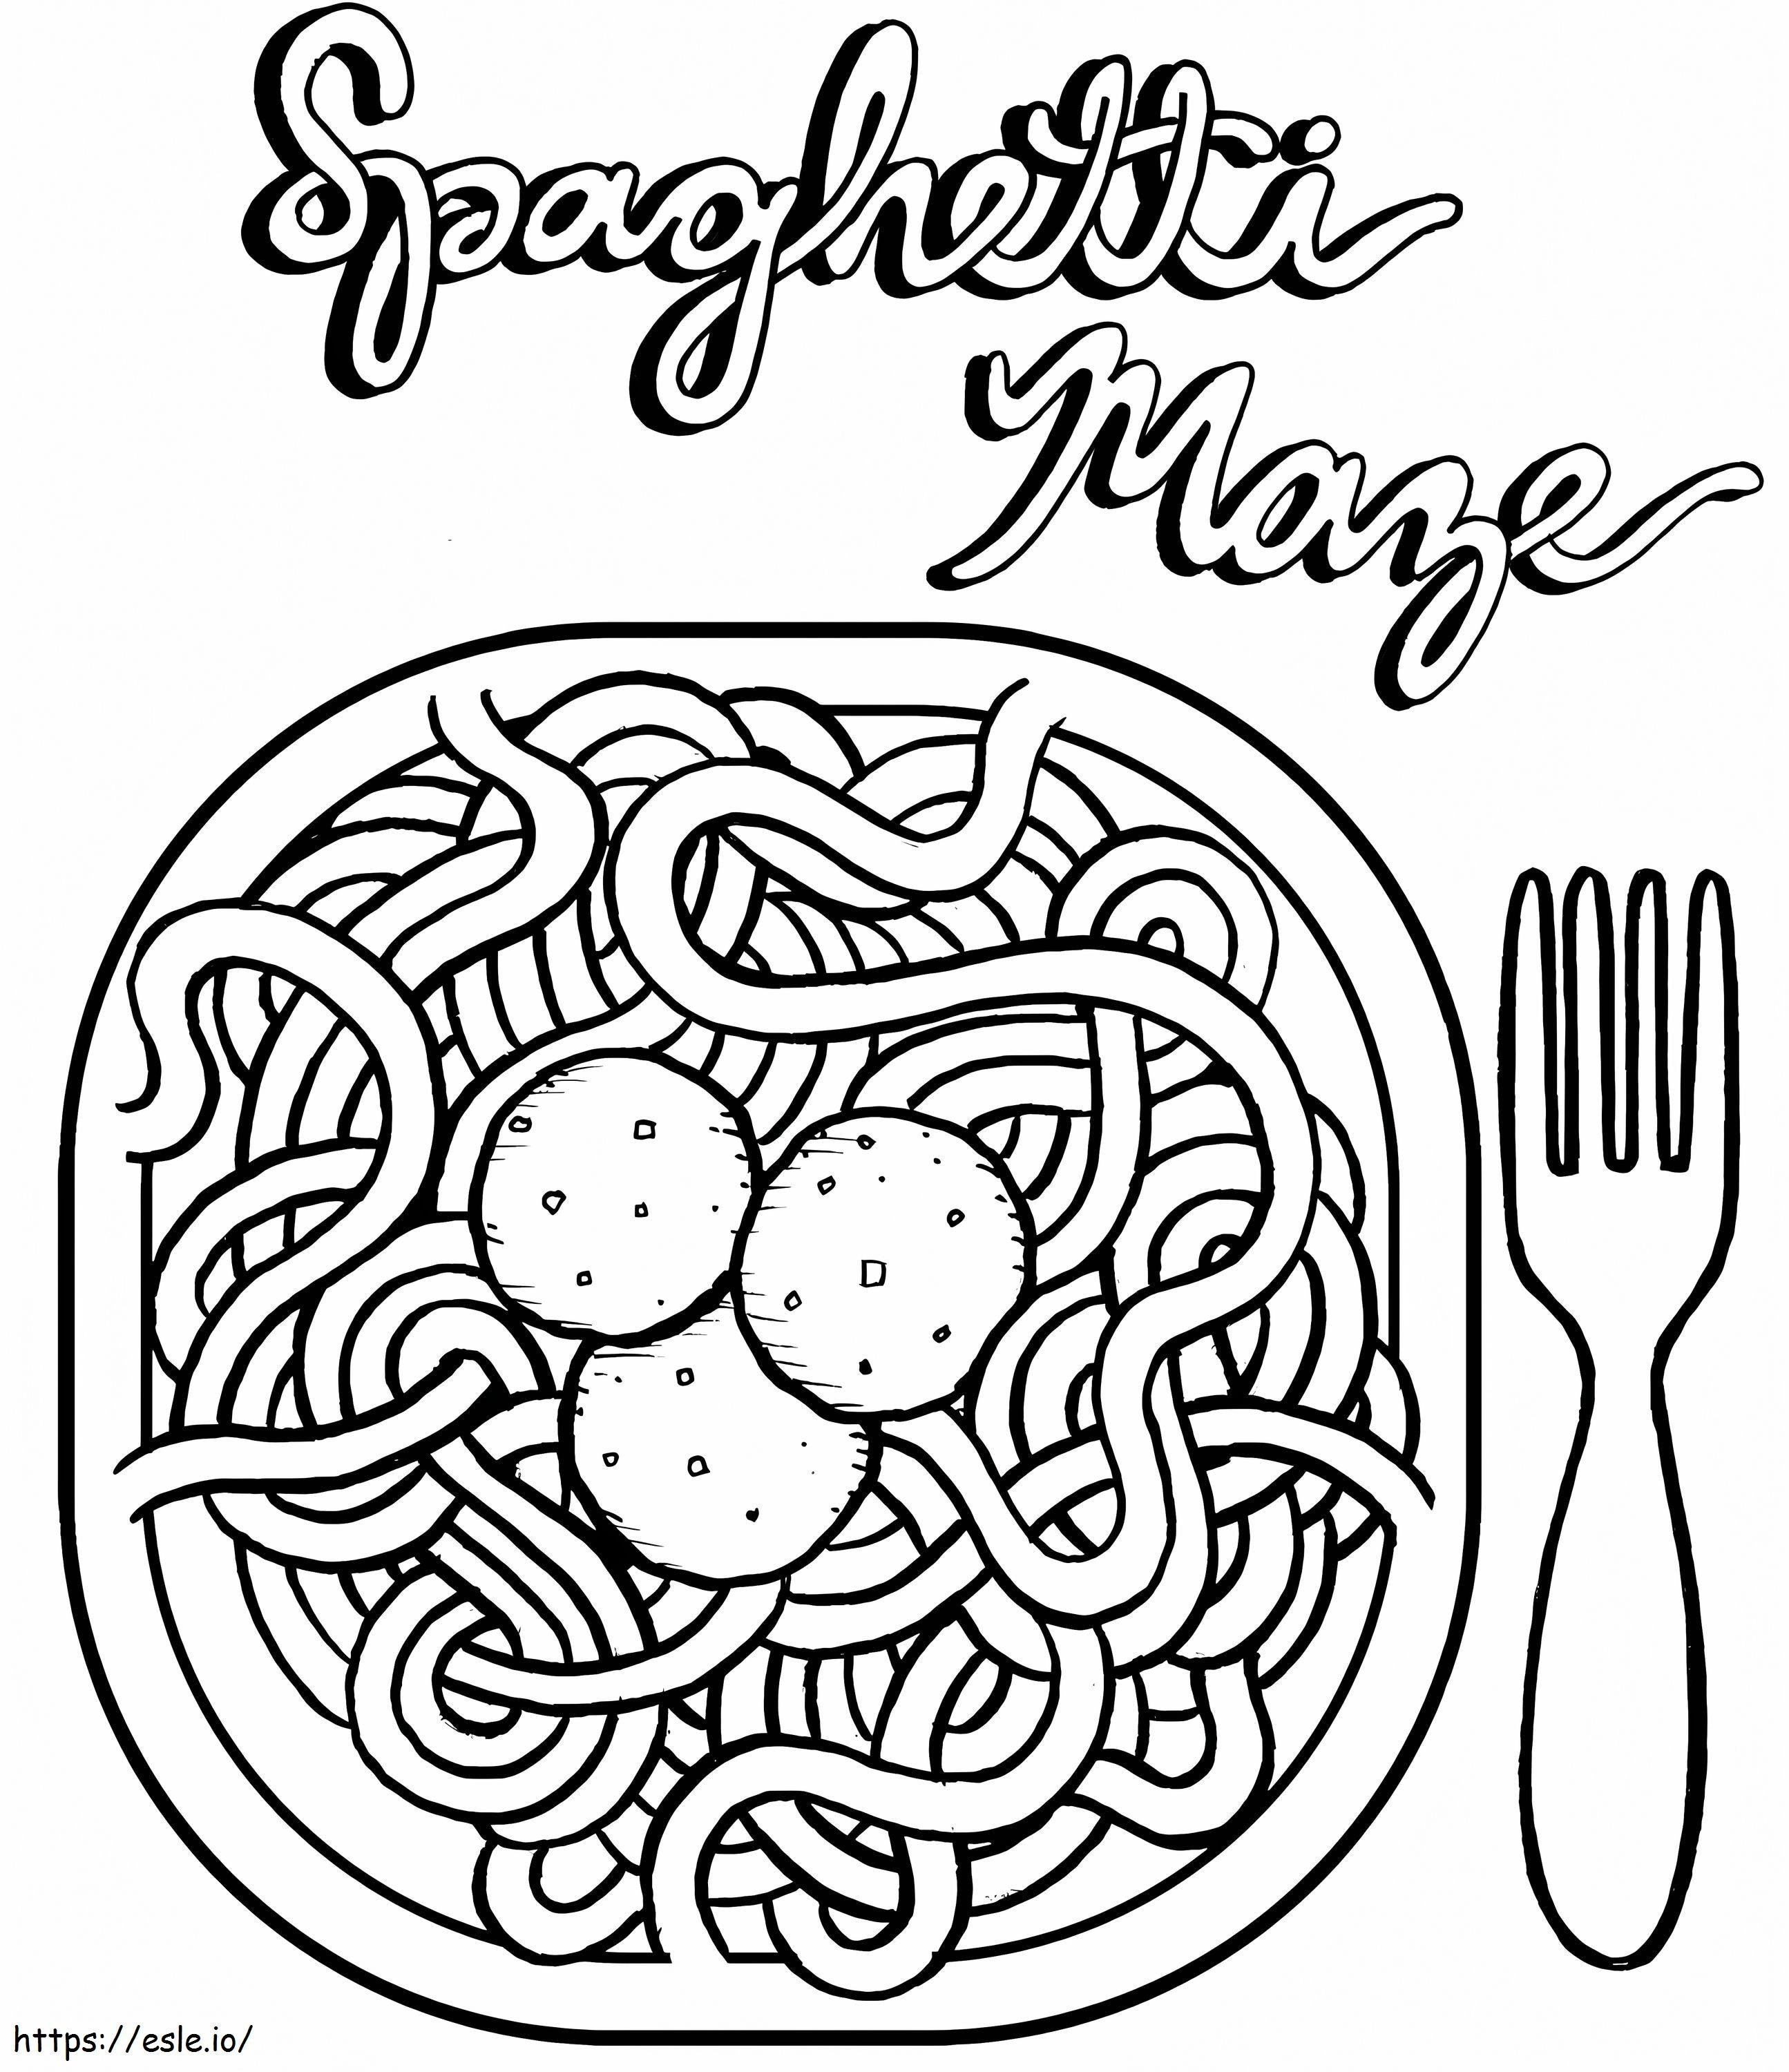 Pasta-Spaghetti und Fleischbällchen ausmalbilder